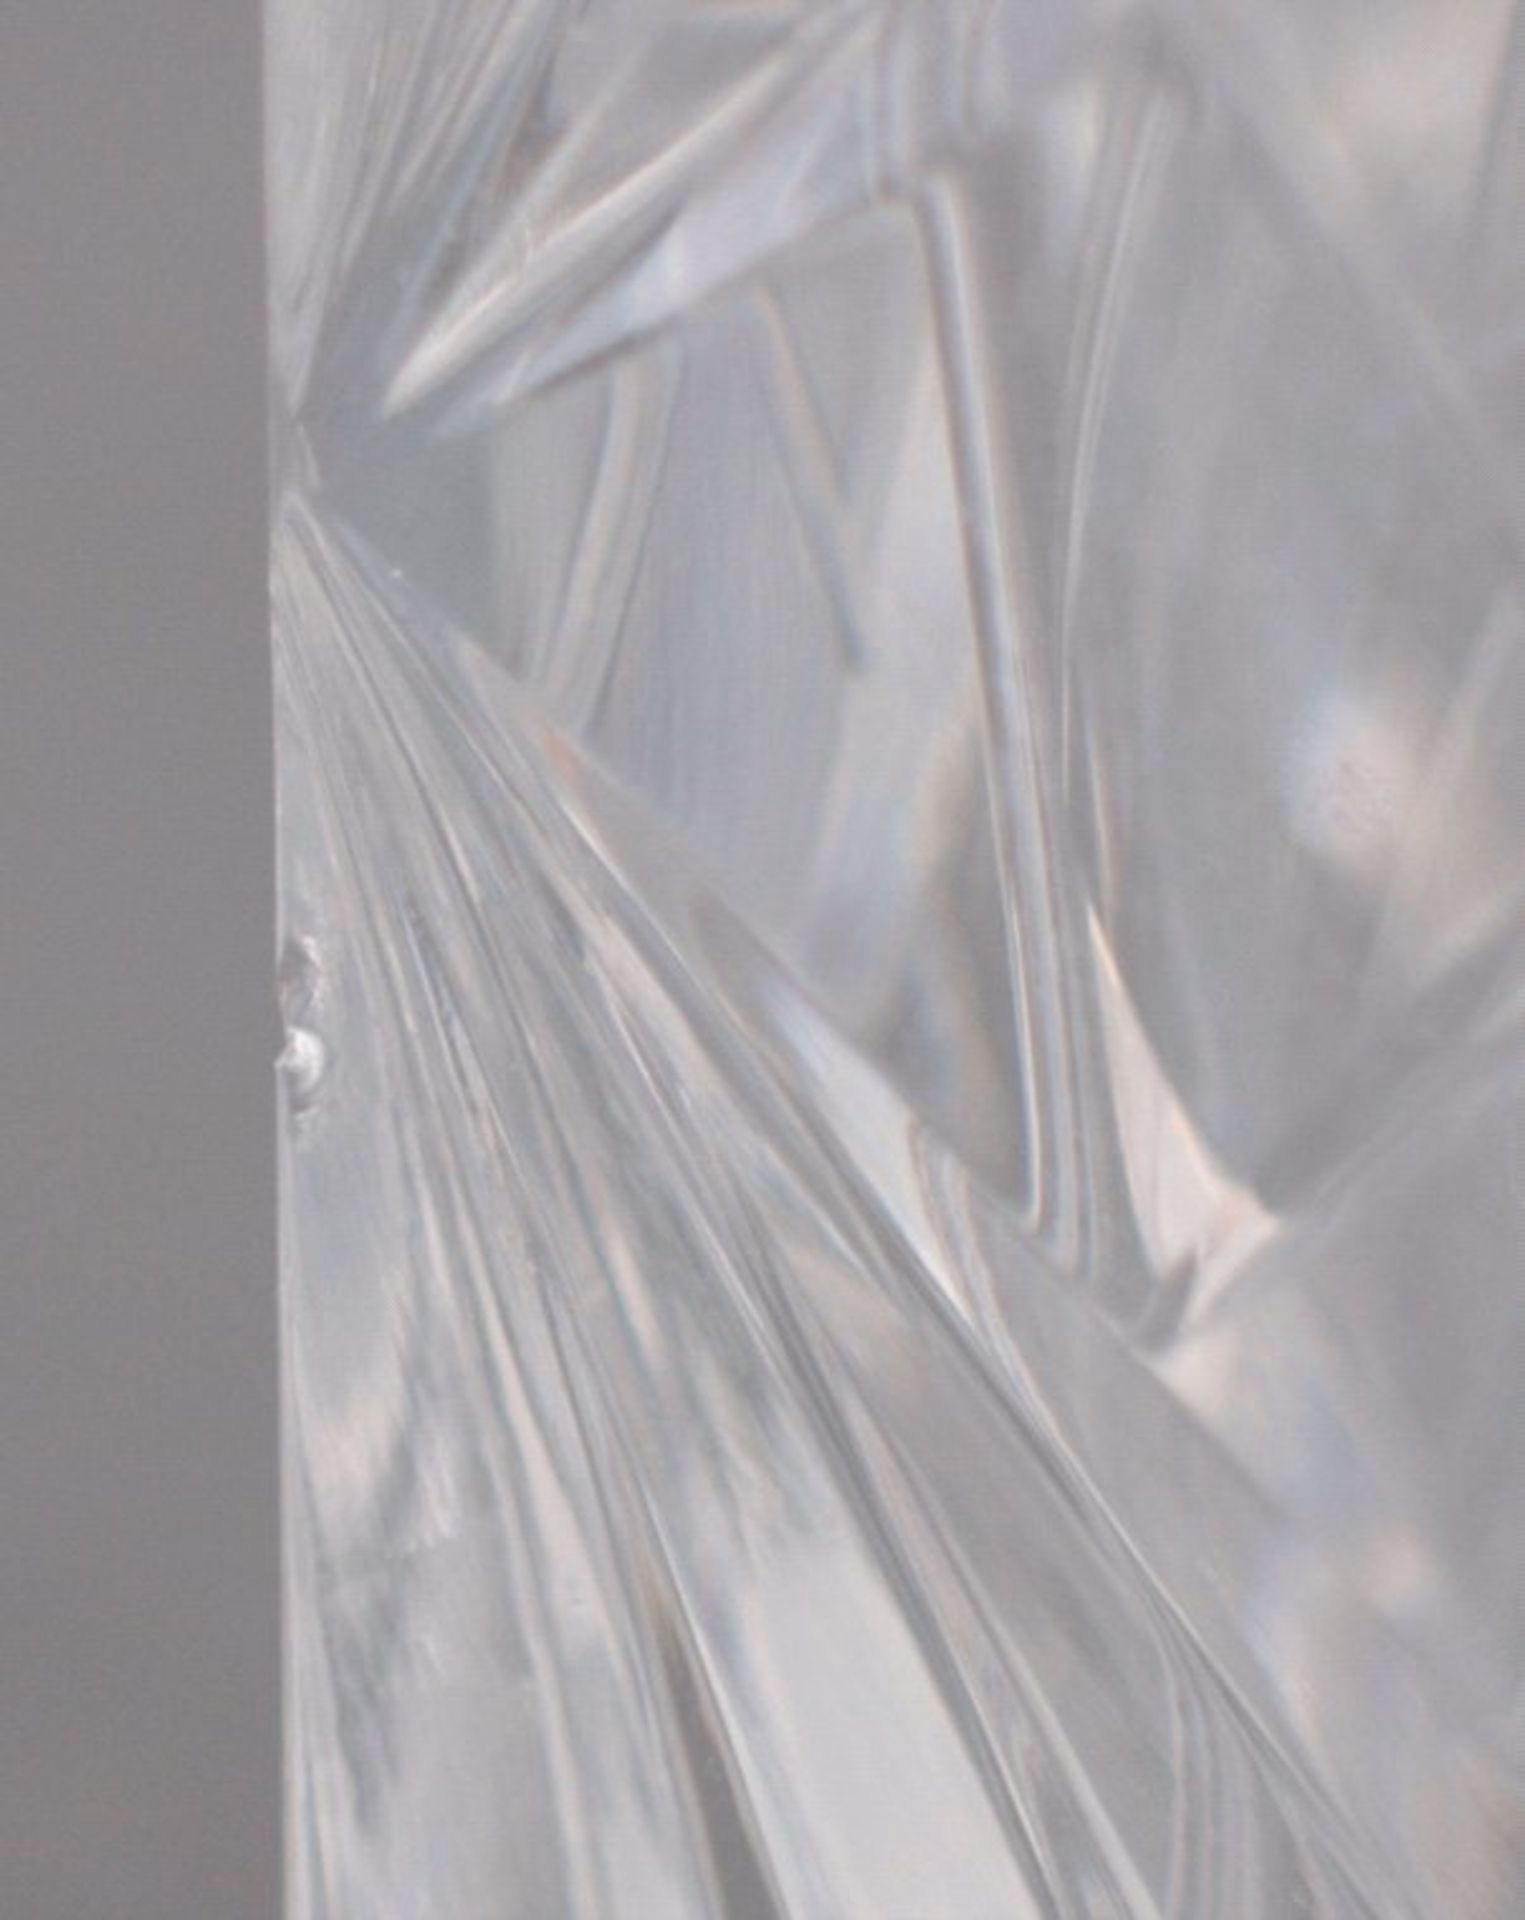 Saint Louis, Karaffe, WhiskeyKristallglas, geschliffen, facettiert, runderfacettierter Stöpsel - Bild 2 aus 2